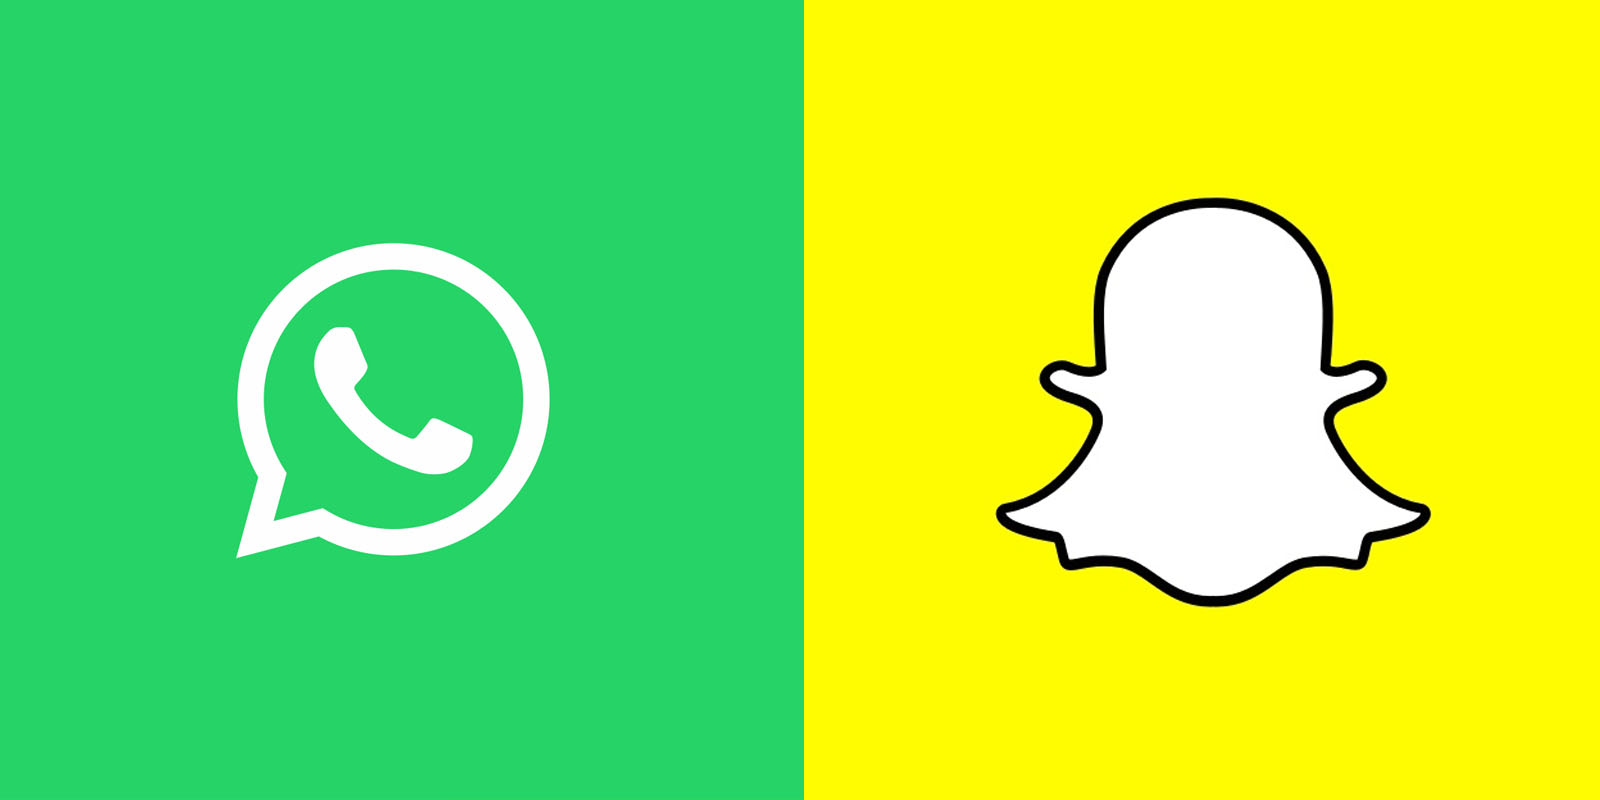 Ρώσια: Επέβαλε πρόστιμο σε WhatsApp & Snapchat για παραβιάσεις στην αποθήκευση δεδομένων